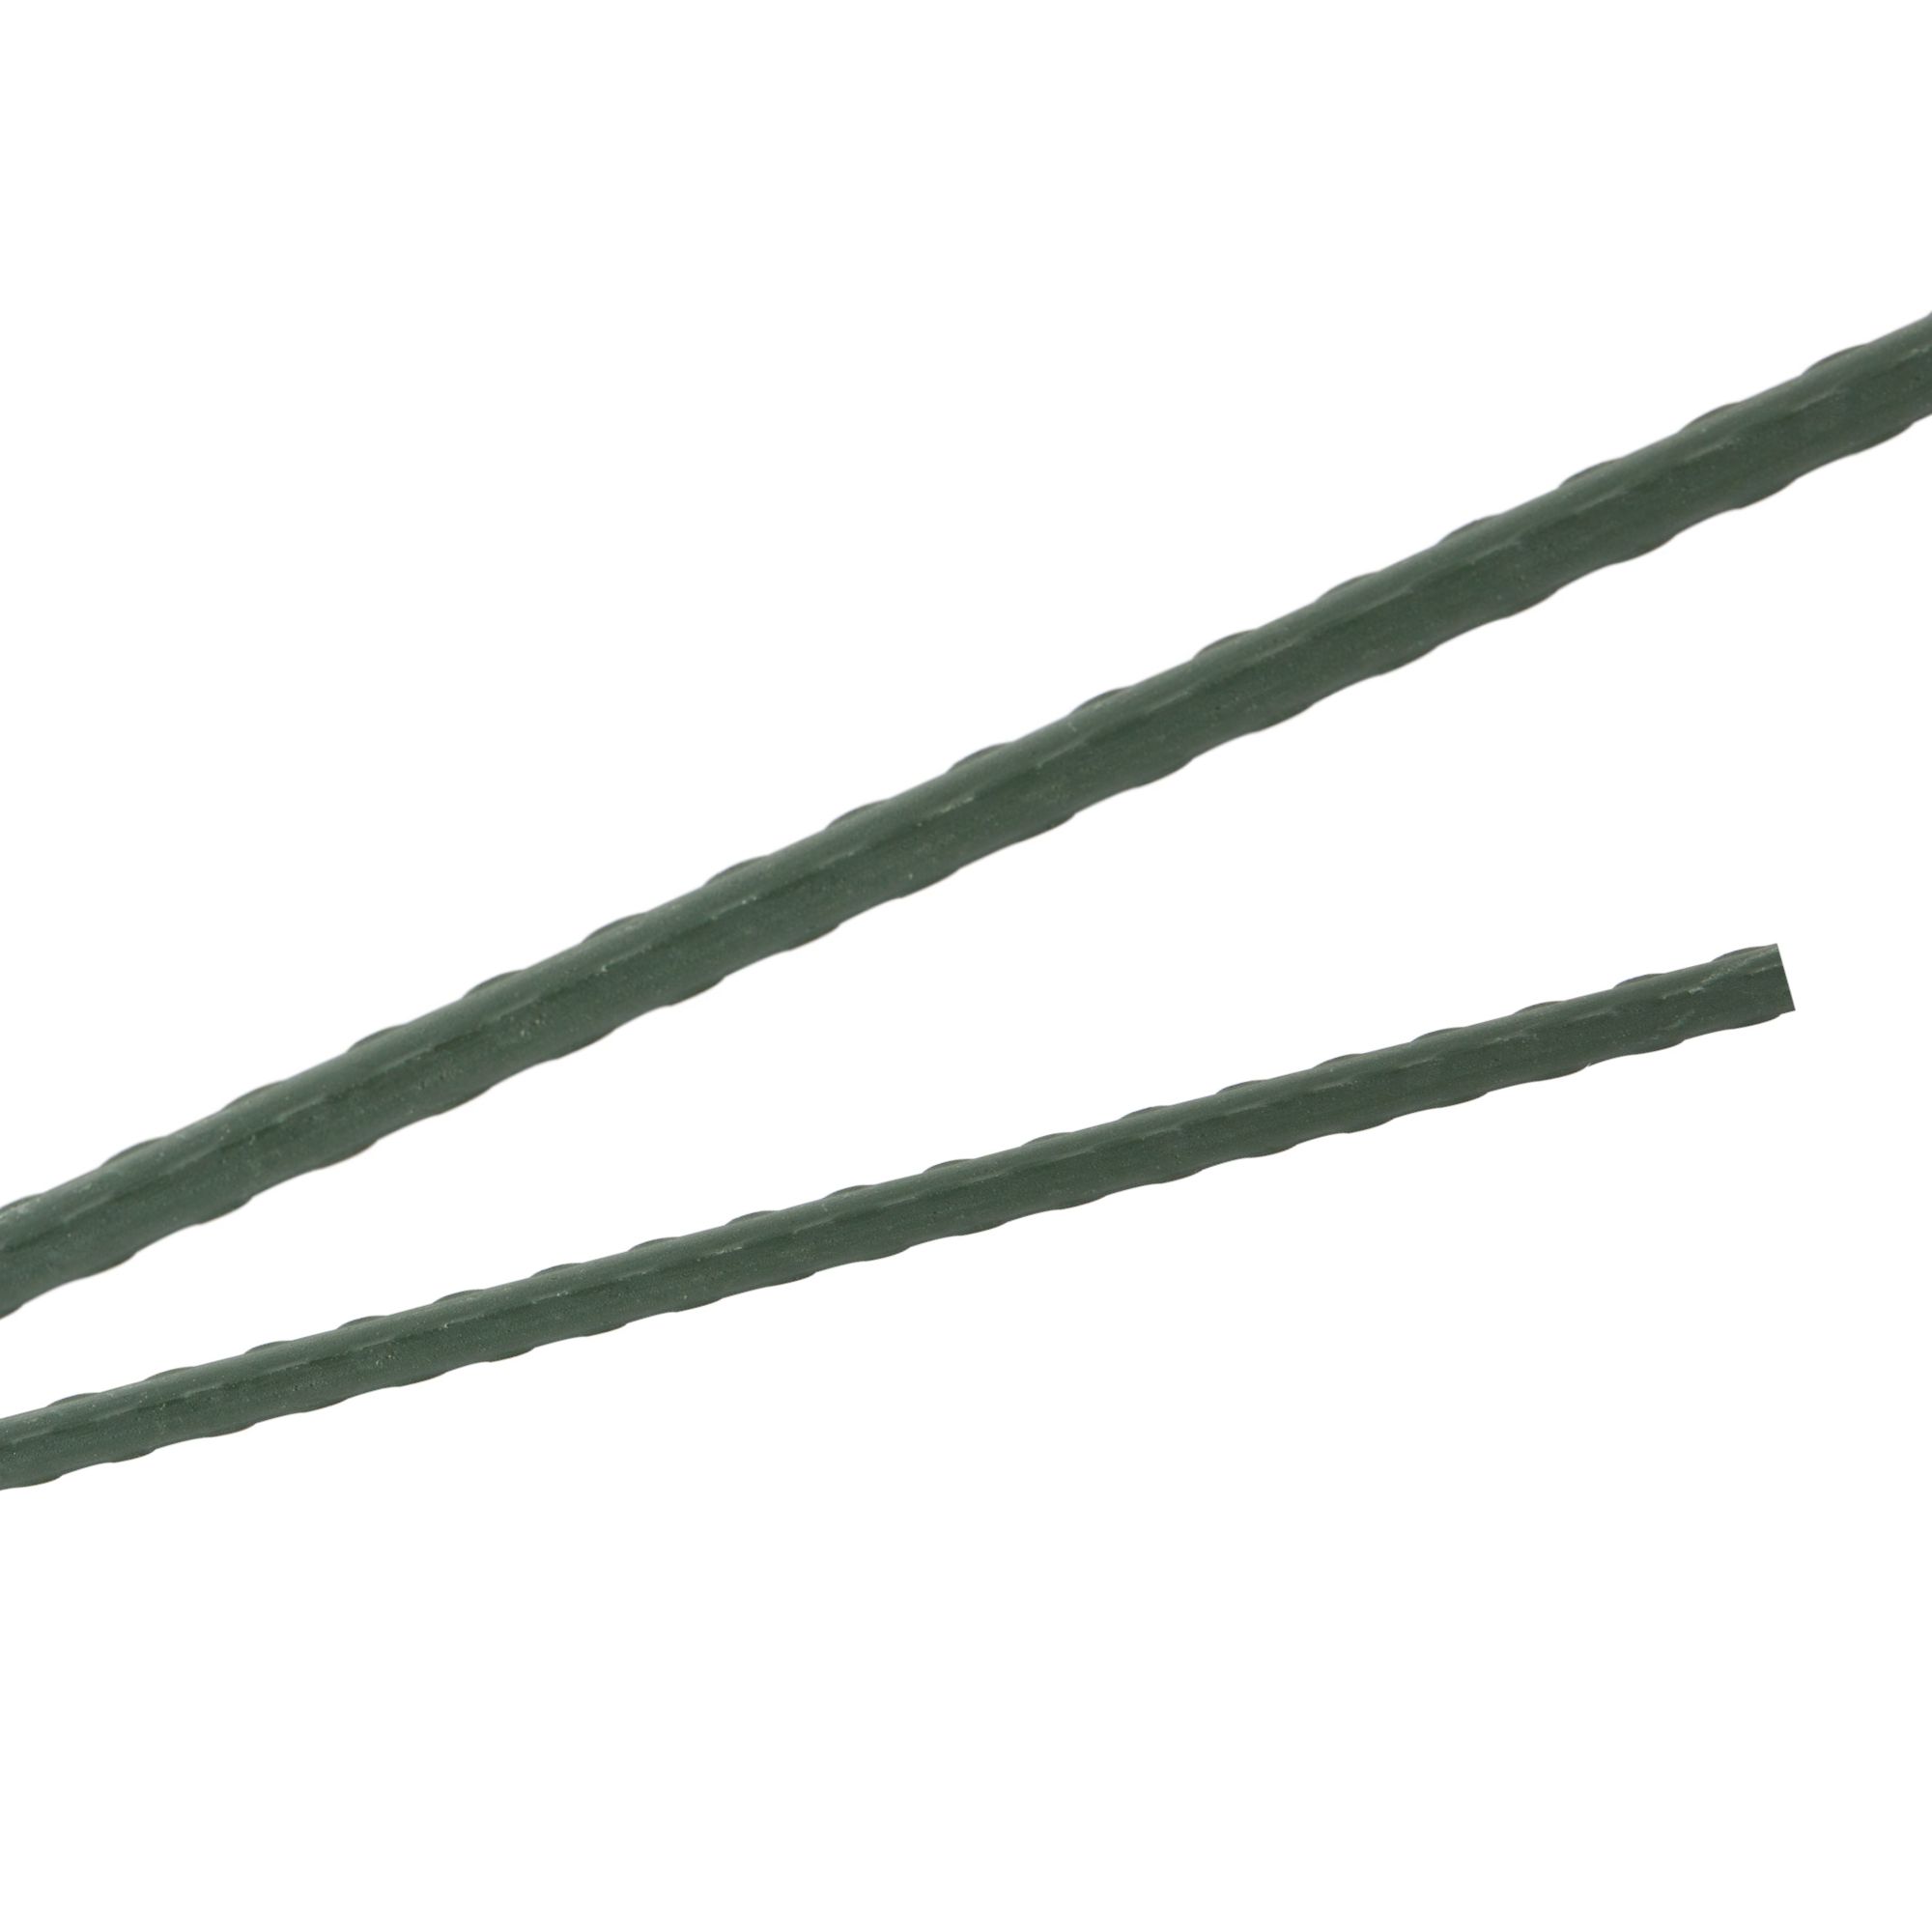 Tyč podpěrná, 16mm, 150cm, kov+PVC, zelená 0.212000 Kg GIGA Sklad20 32014 119